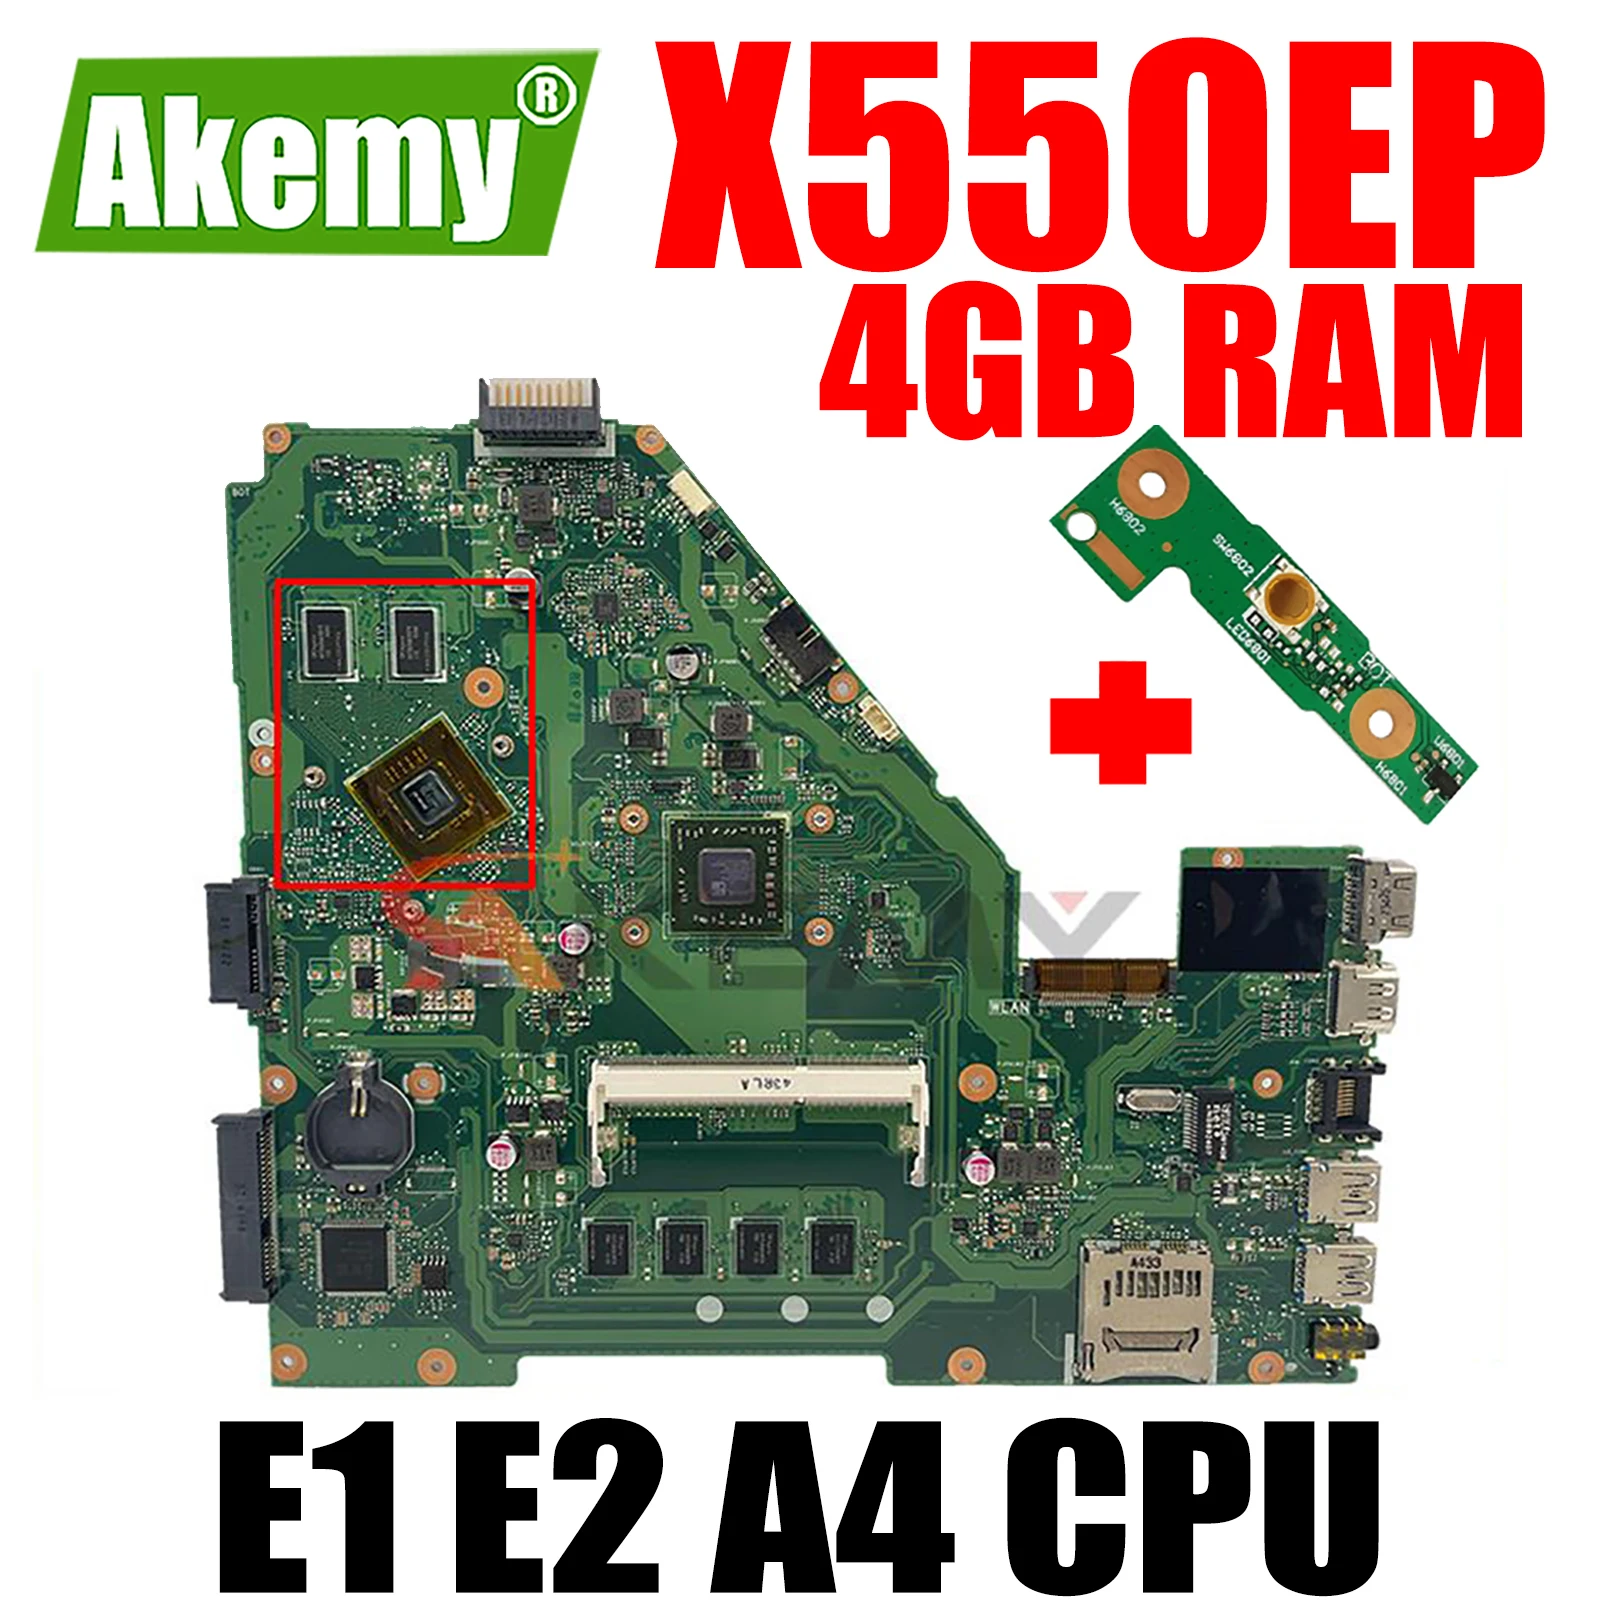 

X550EP Notebook Mainboard E1 E2 A4 CPU 4GB RAM for ASUS X550E X550EP X550E D552E X552E Laptop Motherboard